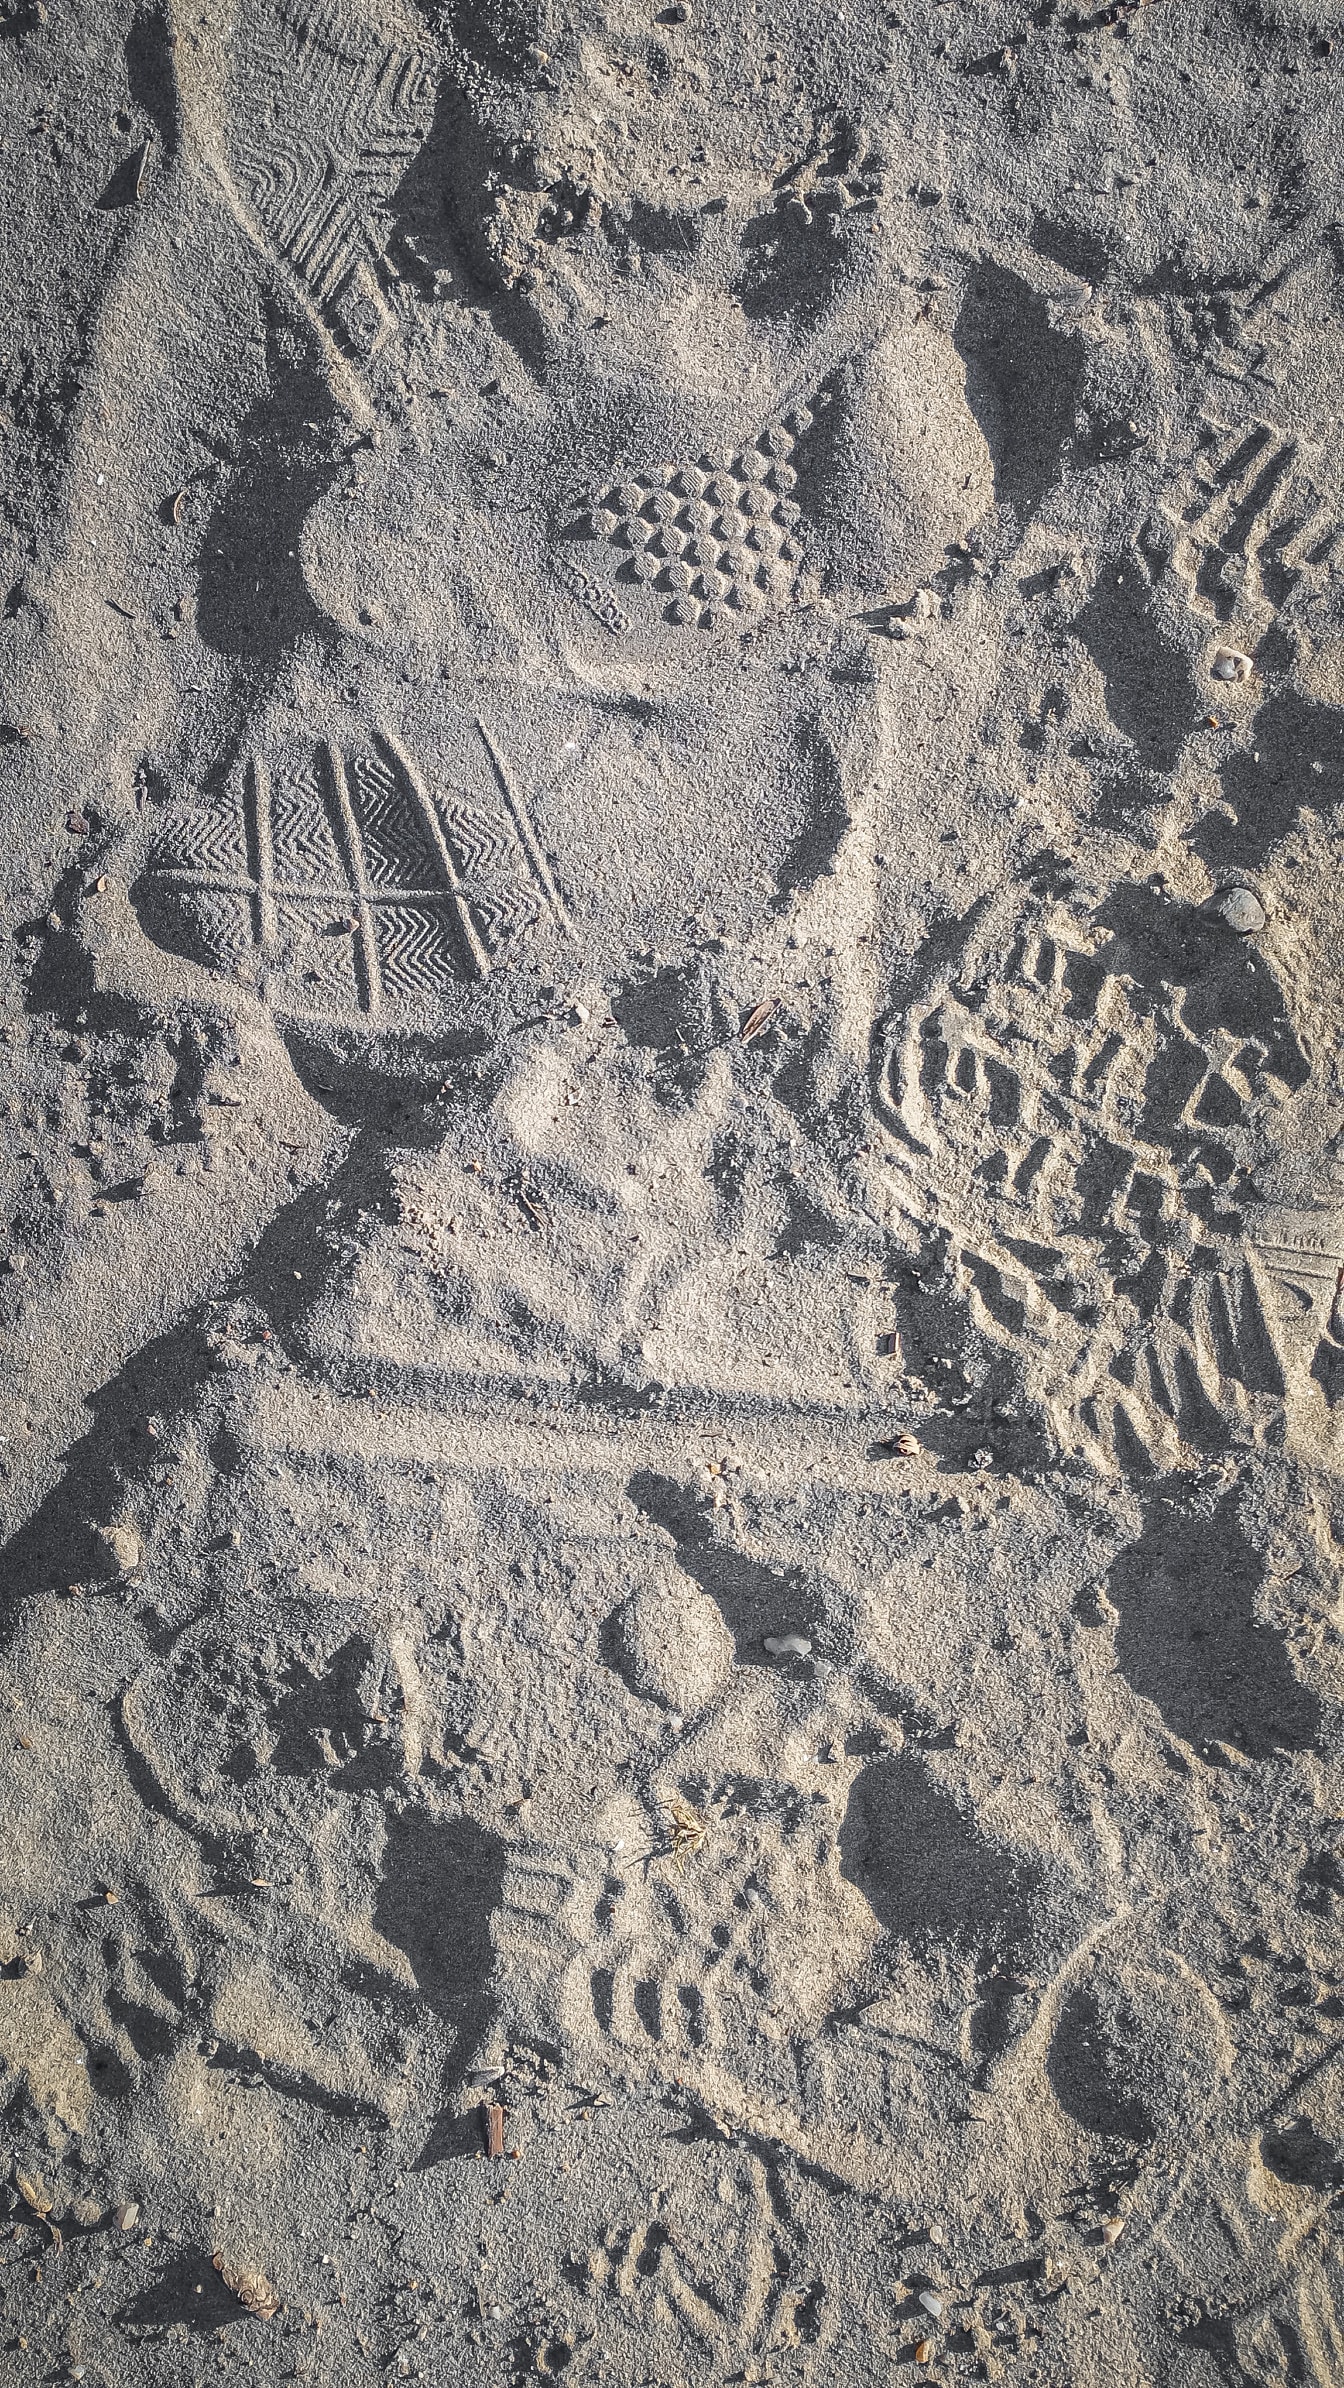 Hrubá textura písku se stopami na povrchu